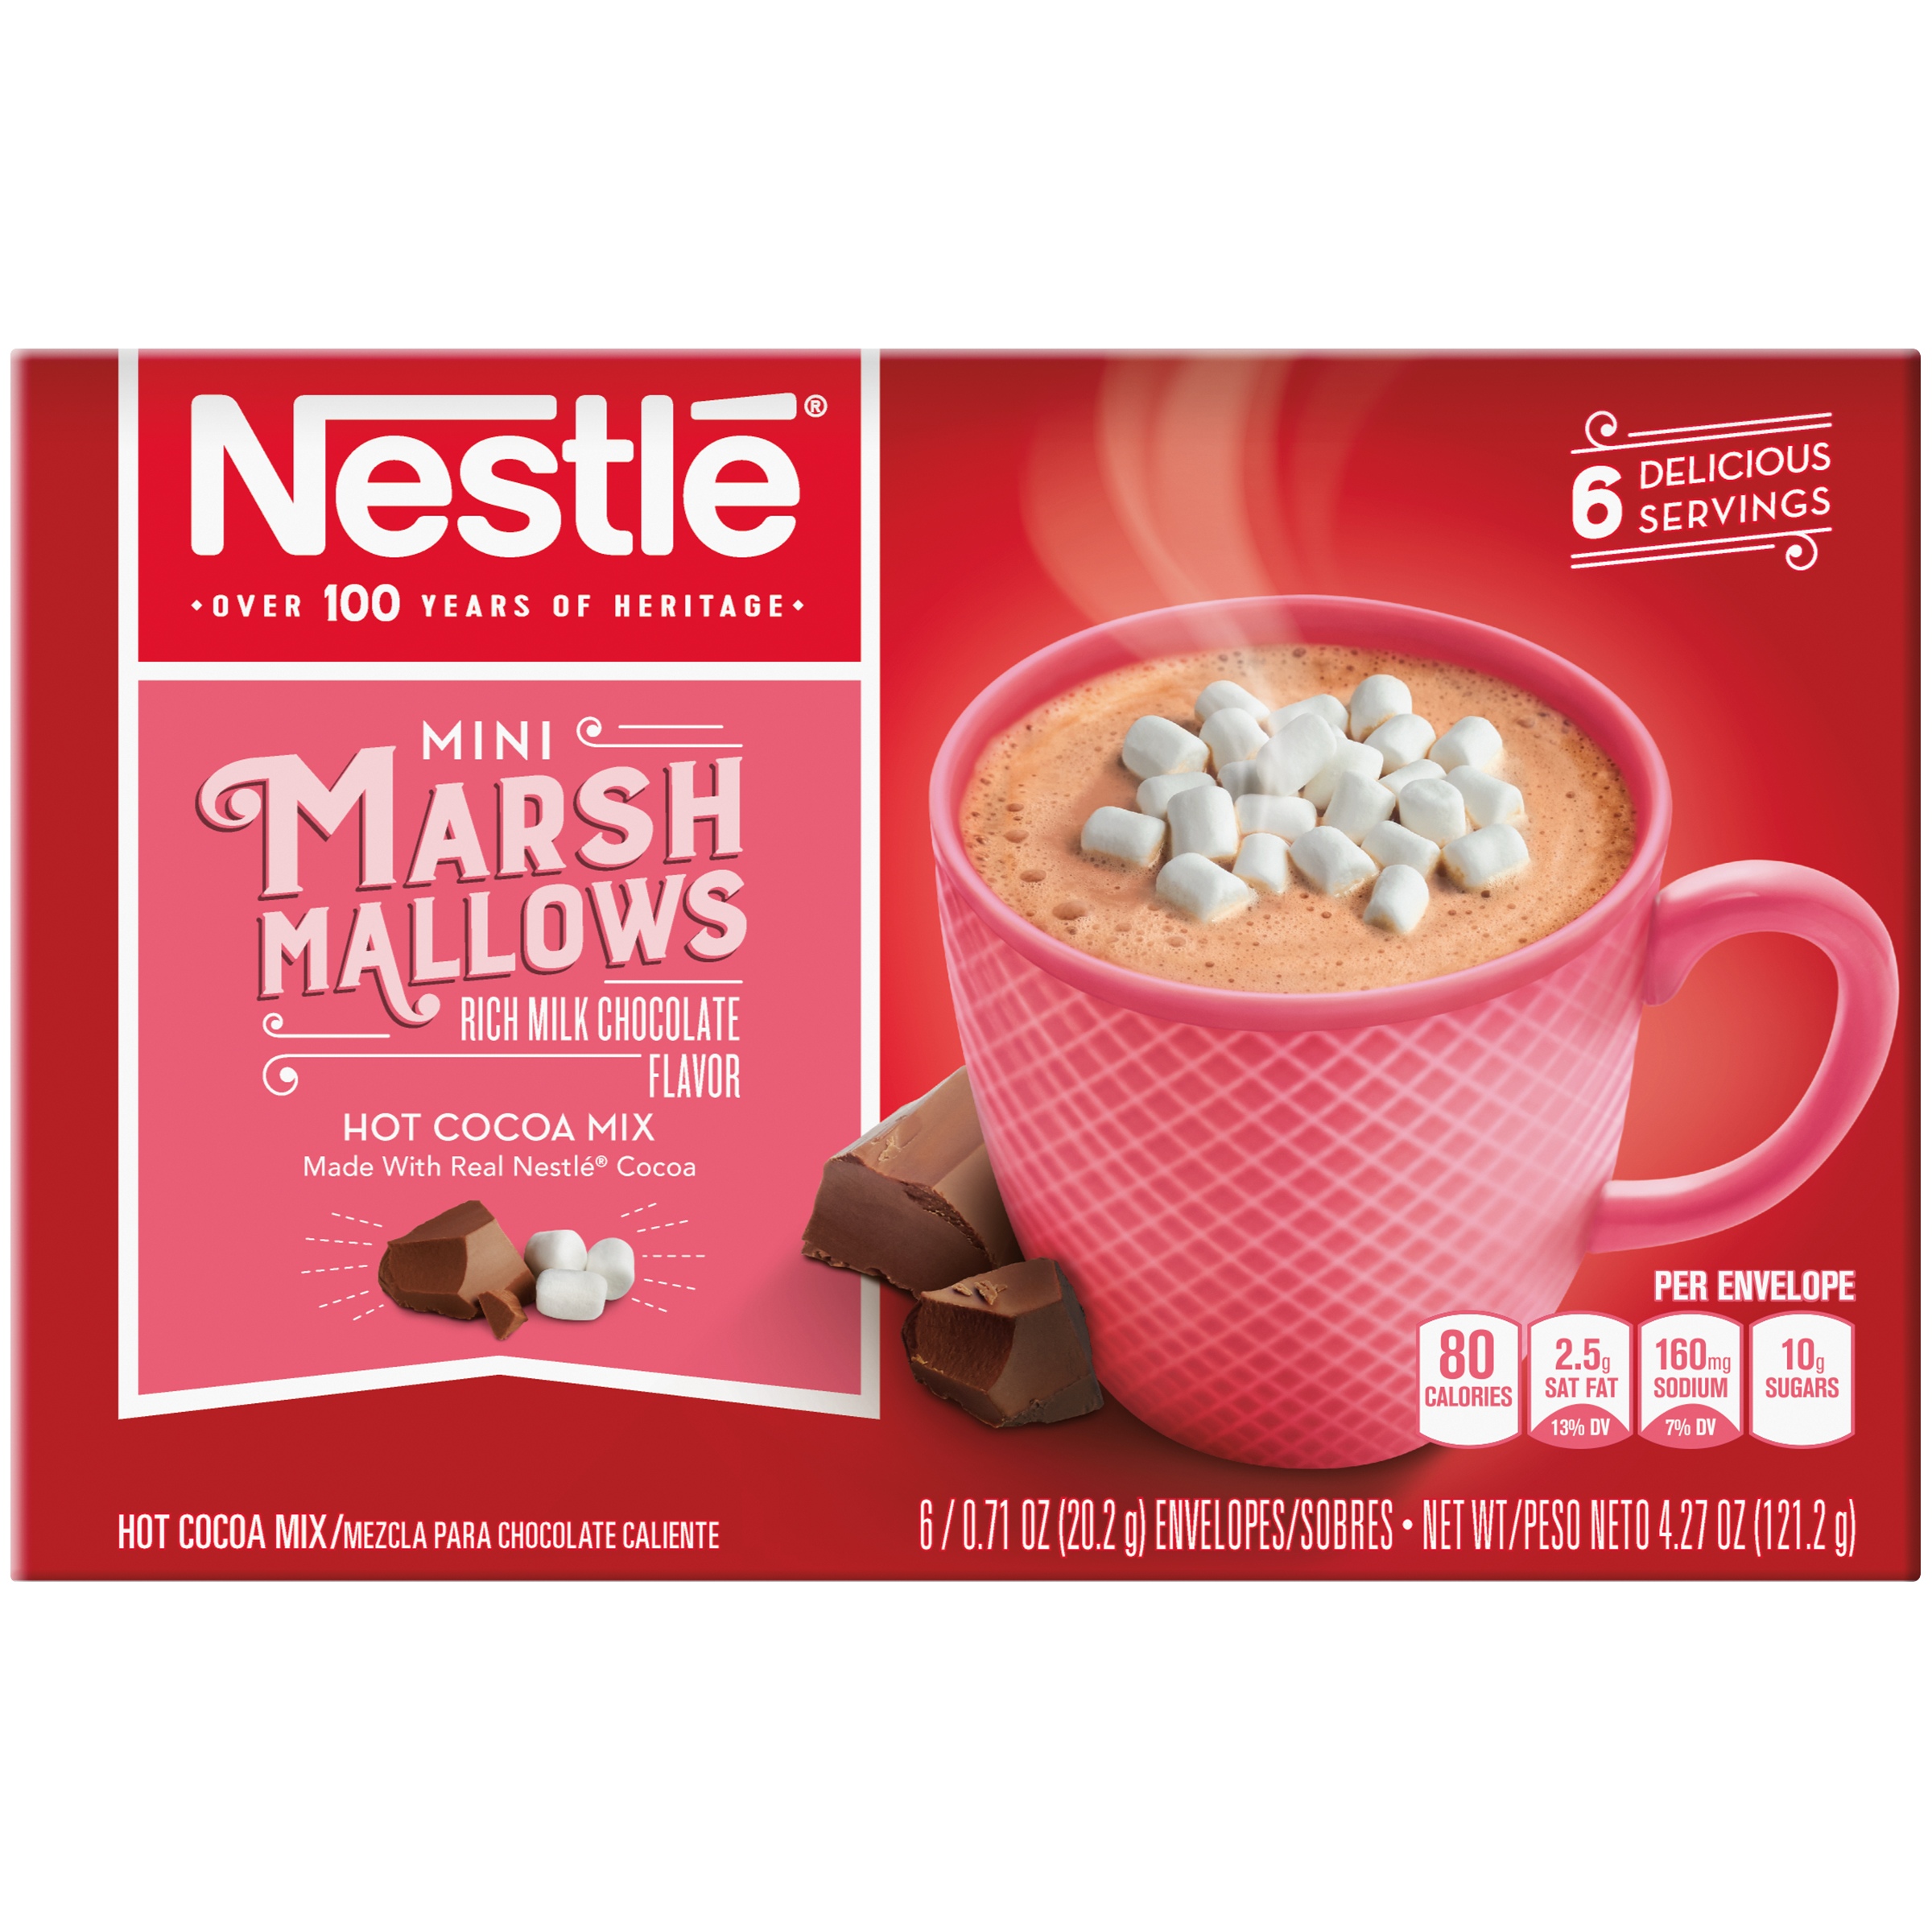 เนสท์เล่ มินิ มาร์ชแมลโลว์ ช็อคโกแลต Nestle Mini Marshmallows Rich Milk Chocolate Hot Cocoa Mix 20g*6 ซอง